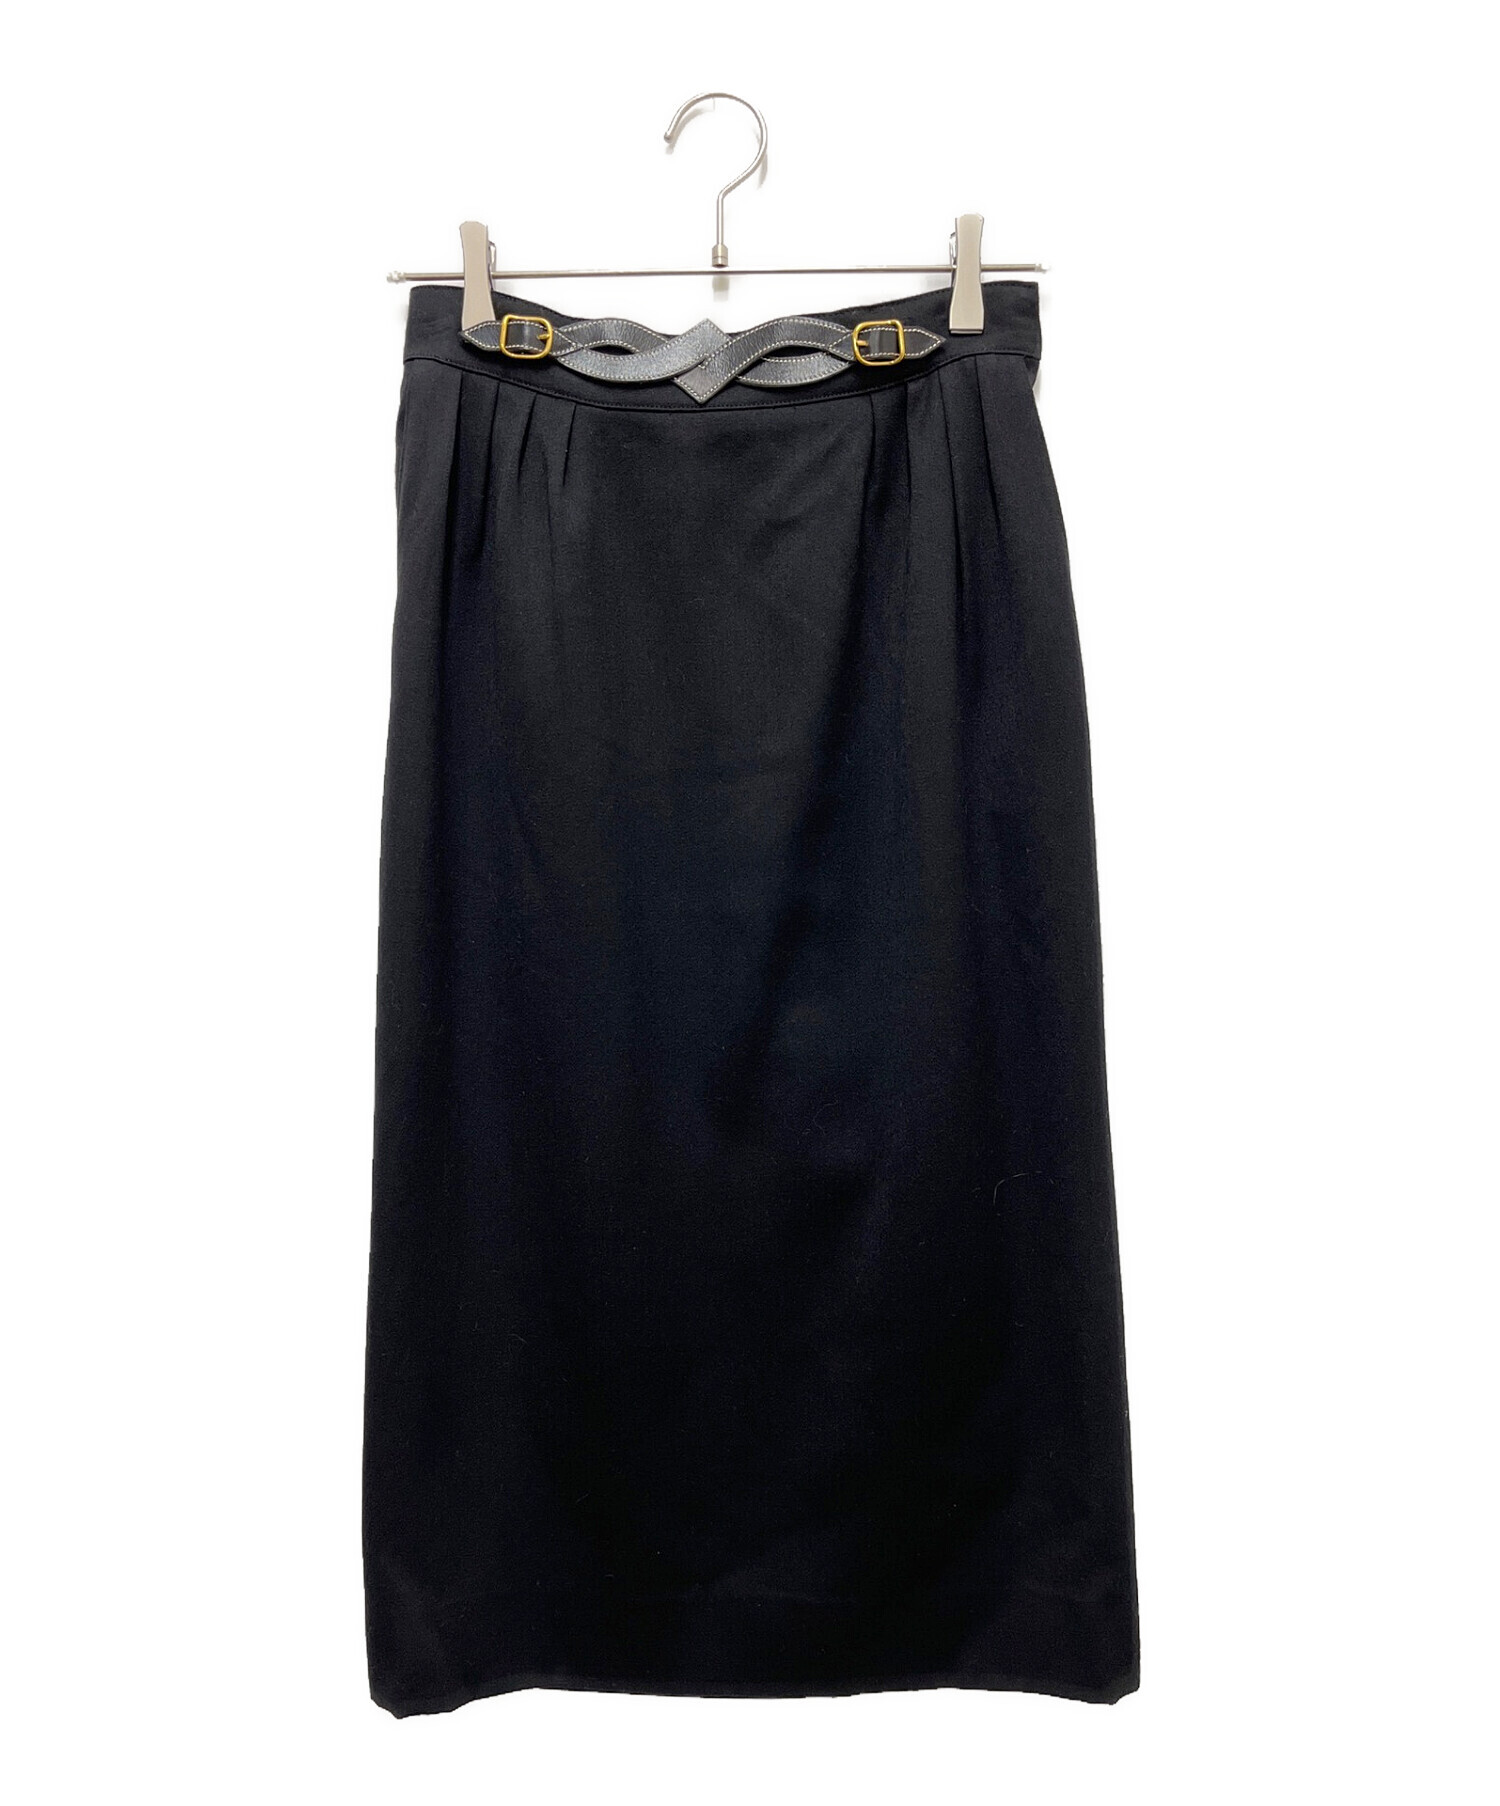 HERMES (エルメス) ヴィンテージロングスカート ブラック サイズ:SIZE 38